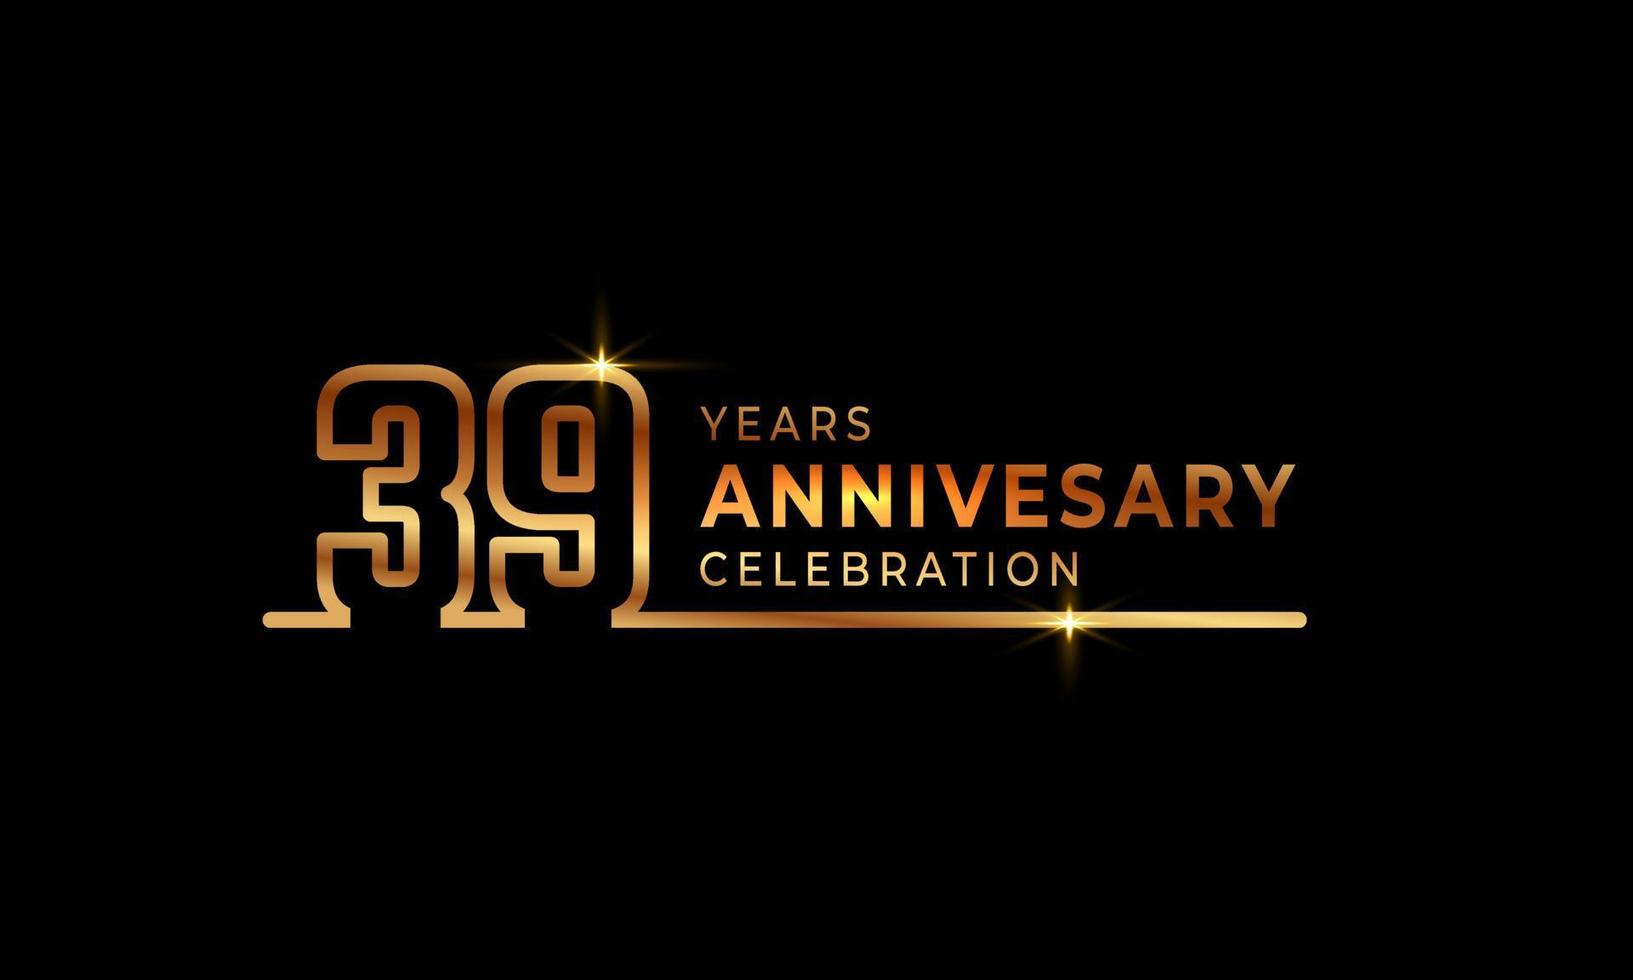 39-jarig jubileumviering logo met gouden gekleurde lettertypenummers gemaakt van één verbonden lijn voor feestgebeurtenis, bruiloft, wenskaart en uitnodiging geïsoleerd op donkere achtergrond vector